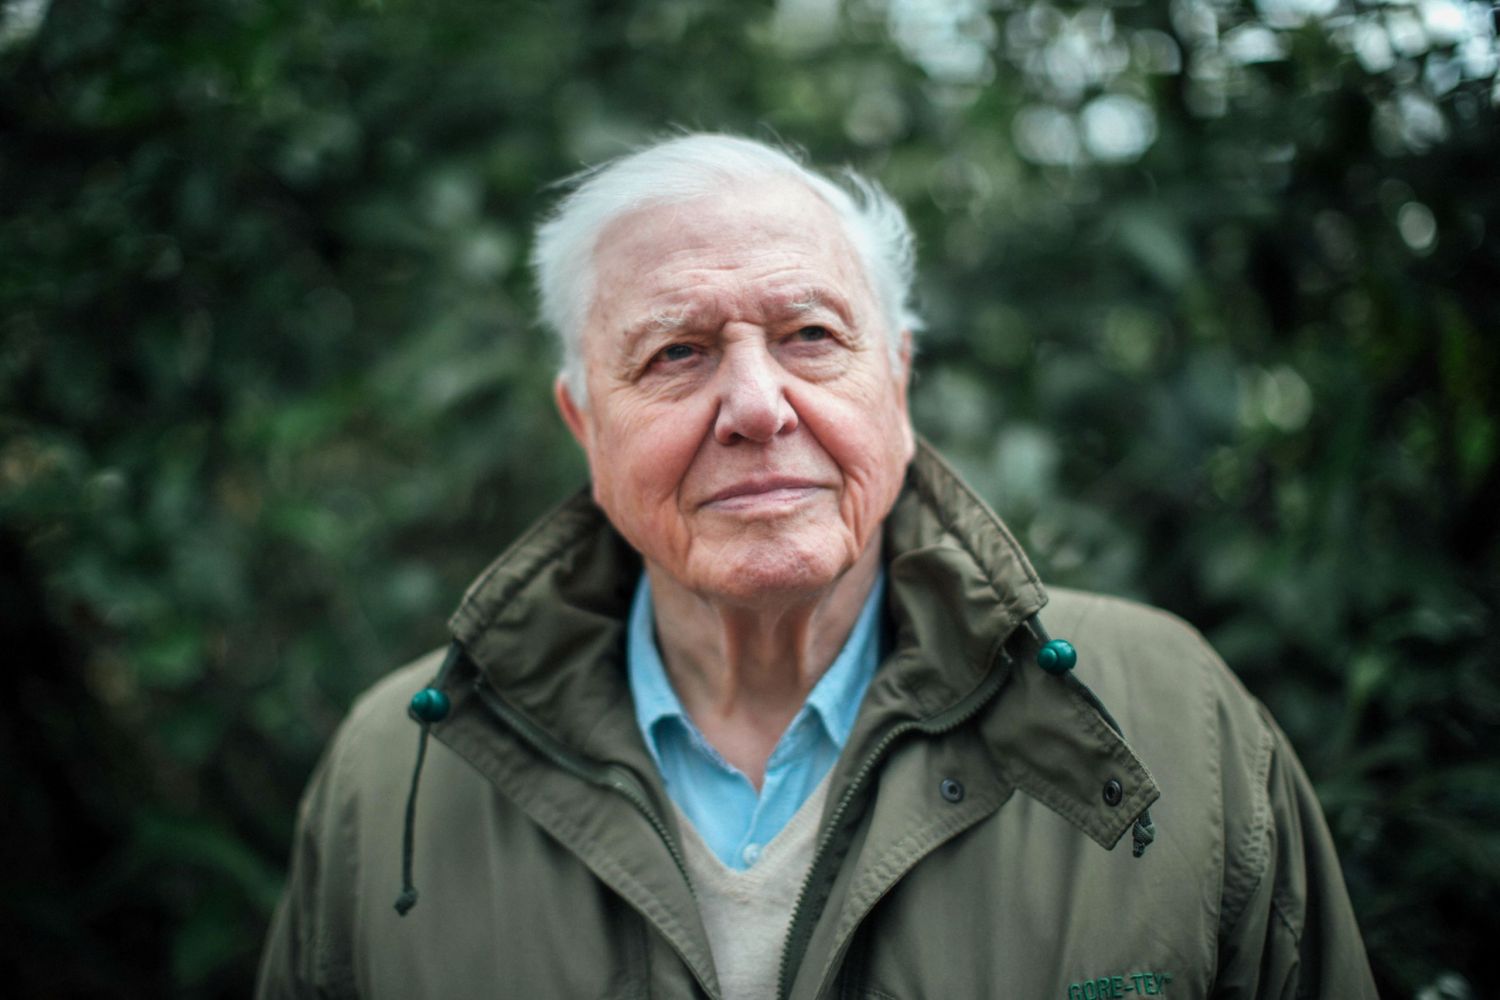 Campañas para la conservación: La Fundación de David Attenborough